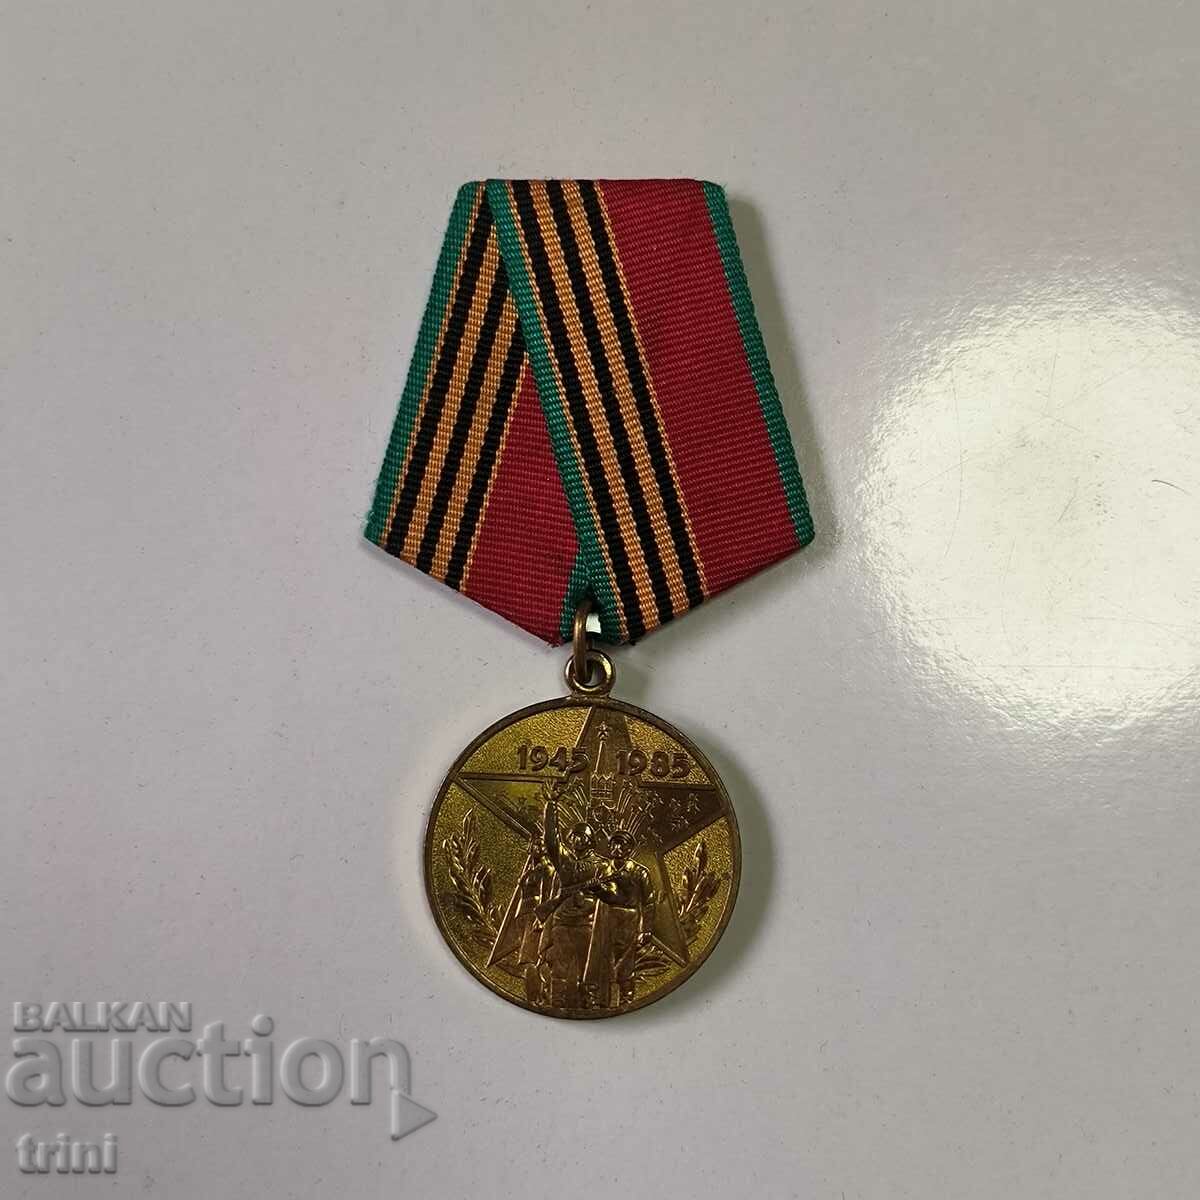 Medalia 40 de ani ai celui de-al Doilea Război Mondial - Pentru un participant al frontului muncii al URSS